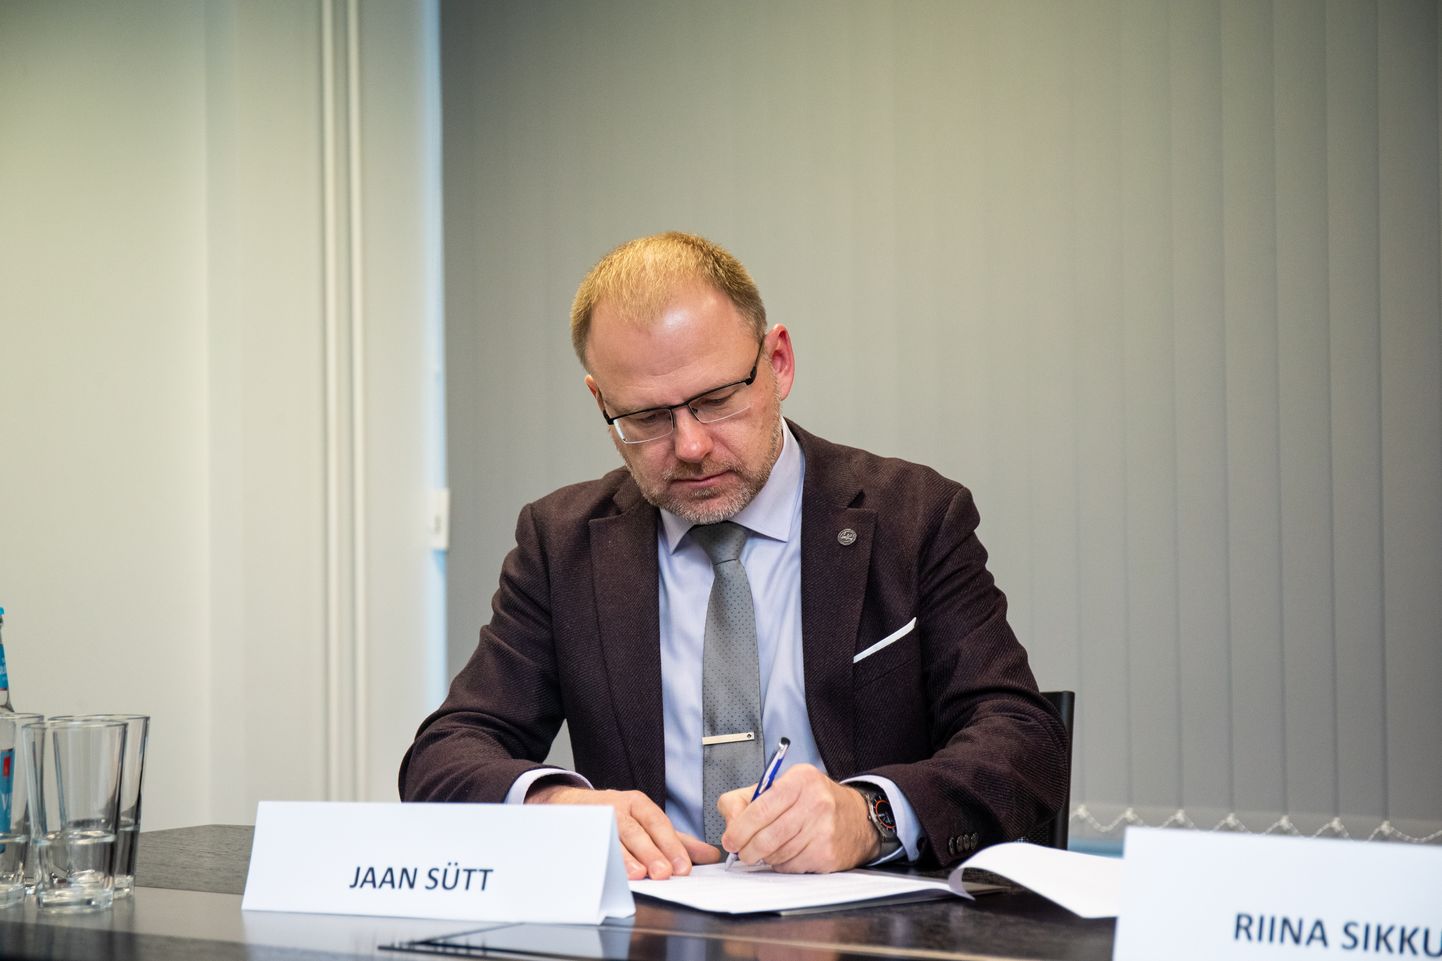 Praegu on Eesti arstide liidu president Jaan Sütt.